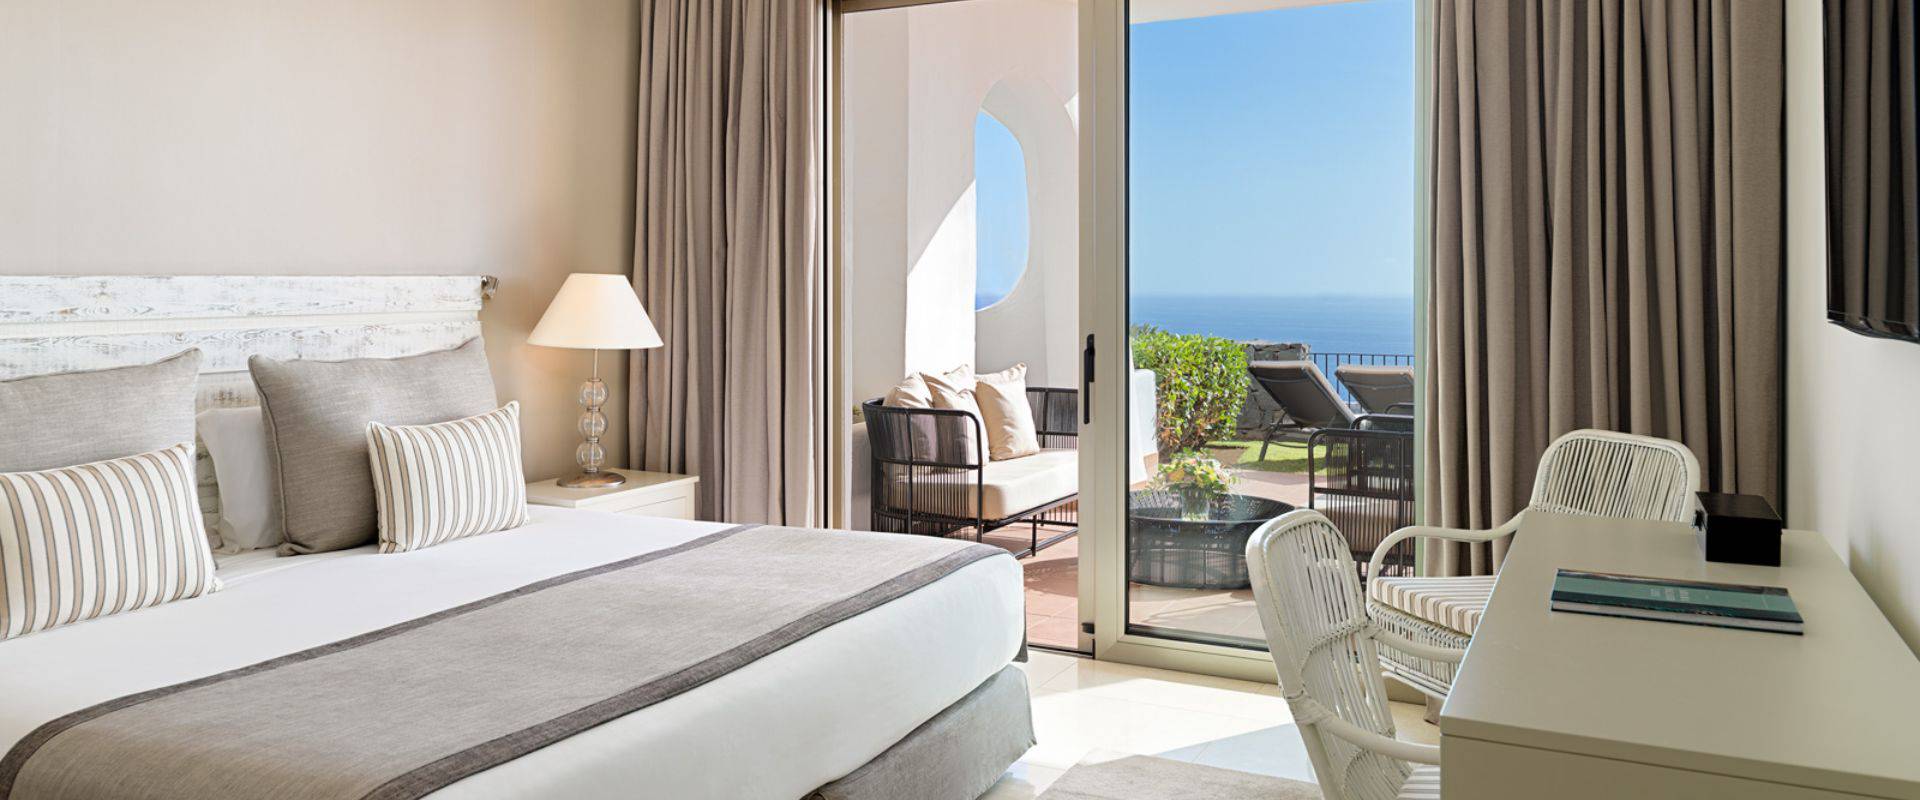  Hotel Las Terrazas de Abama Suites Tenerife